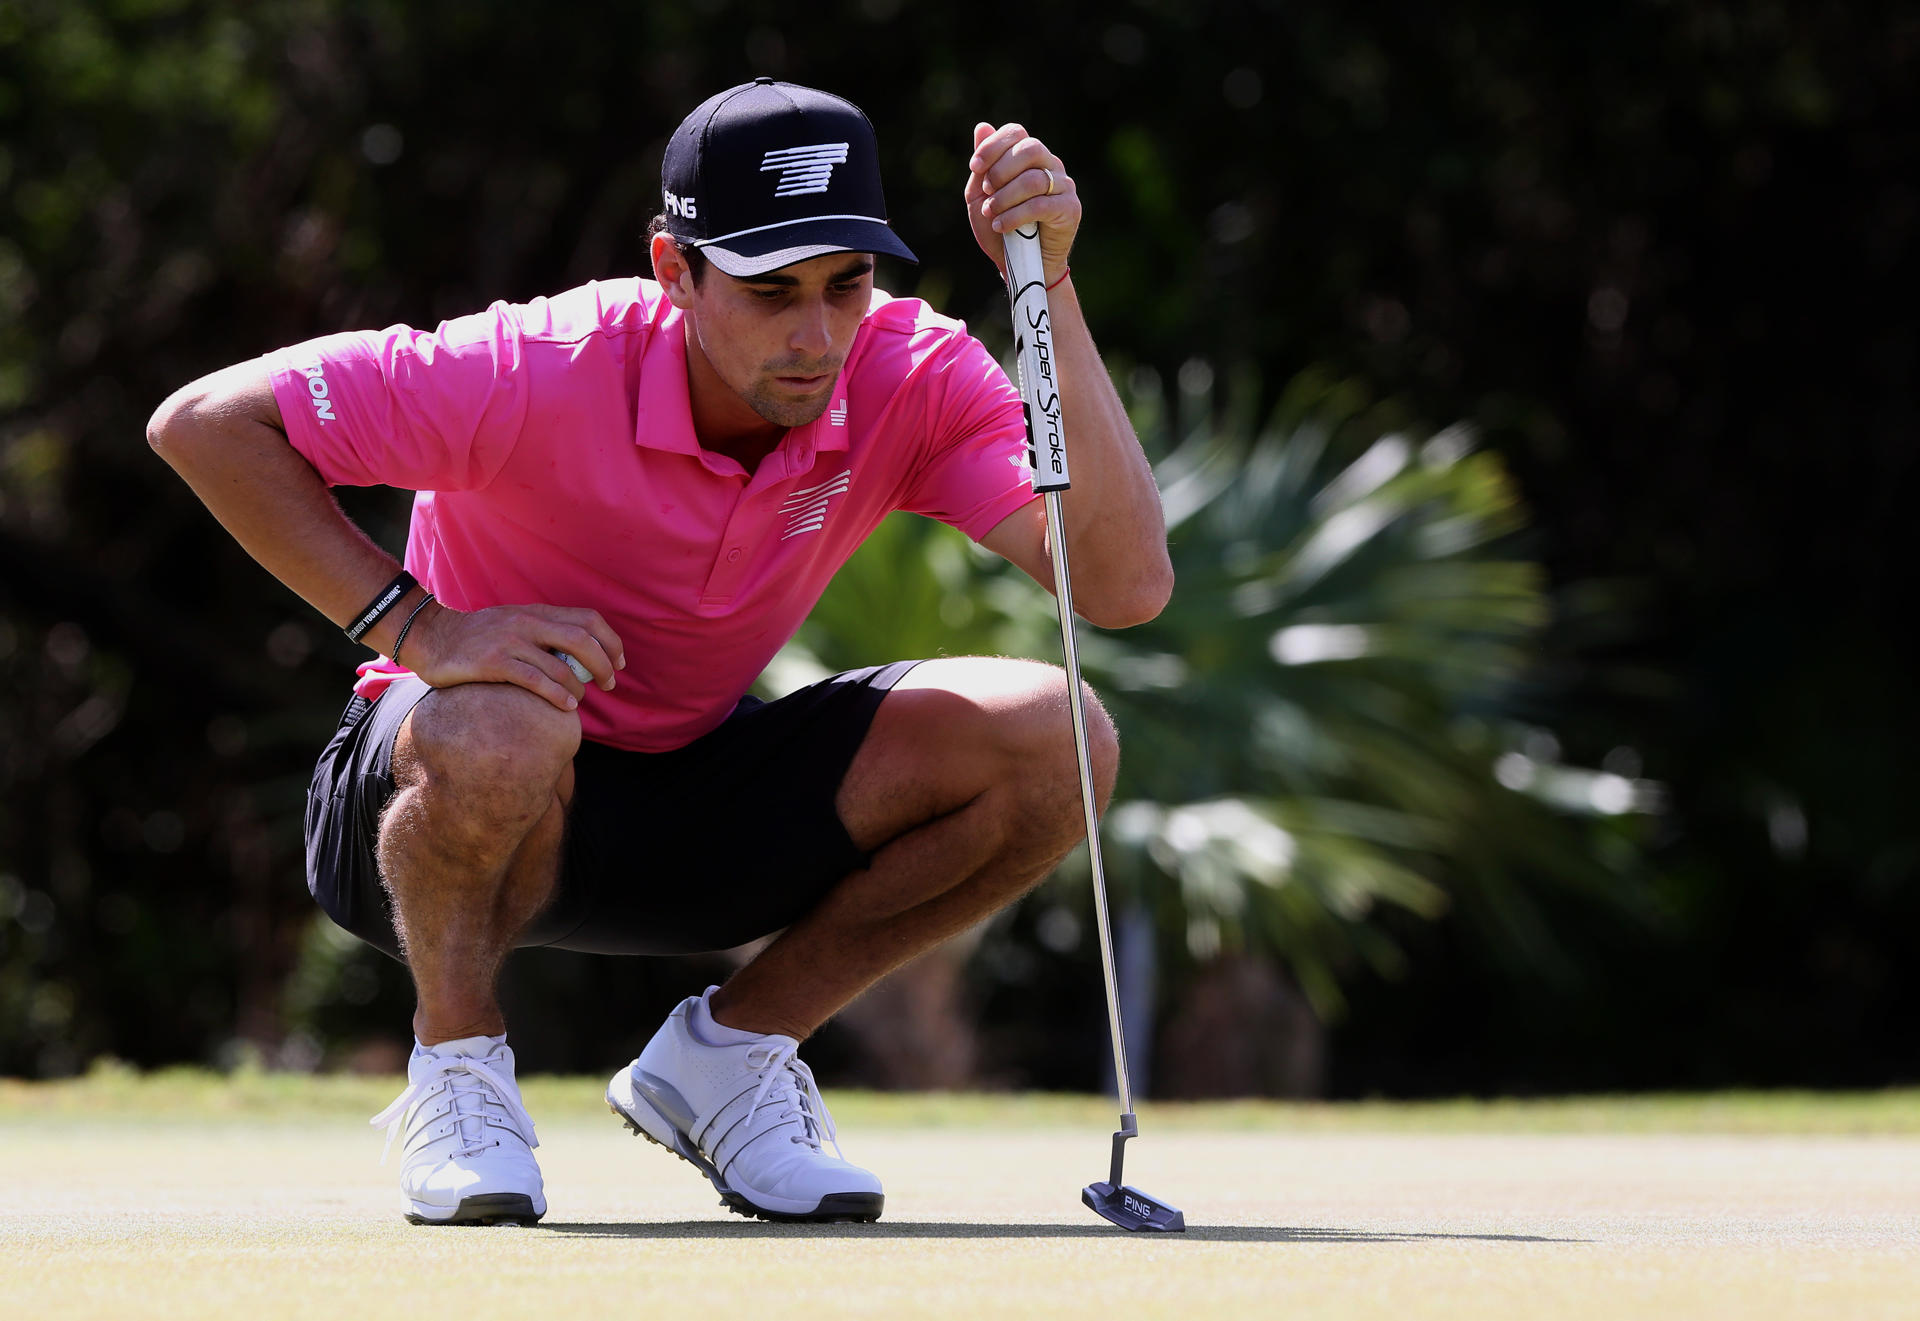 El golfista chileno Joaquín Niemann fue registrado este sábado, 3 de febrero, durante la segunda ronda del torneo LIV golf Mayakoba, en Playa del Carmen (estado de Quintana Roo, México). EFE/Alonso Cupul